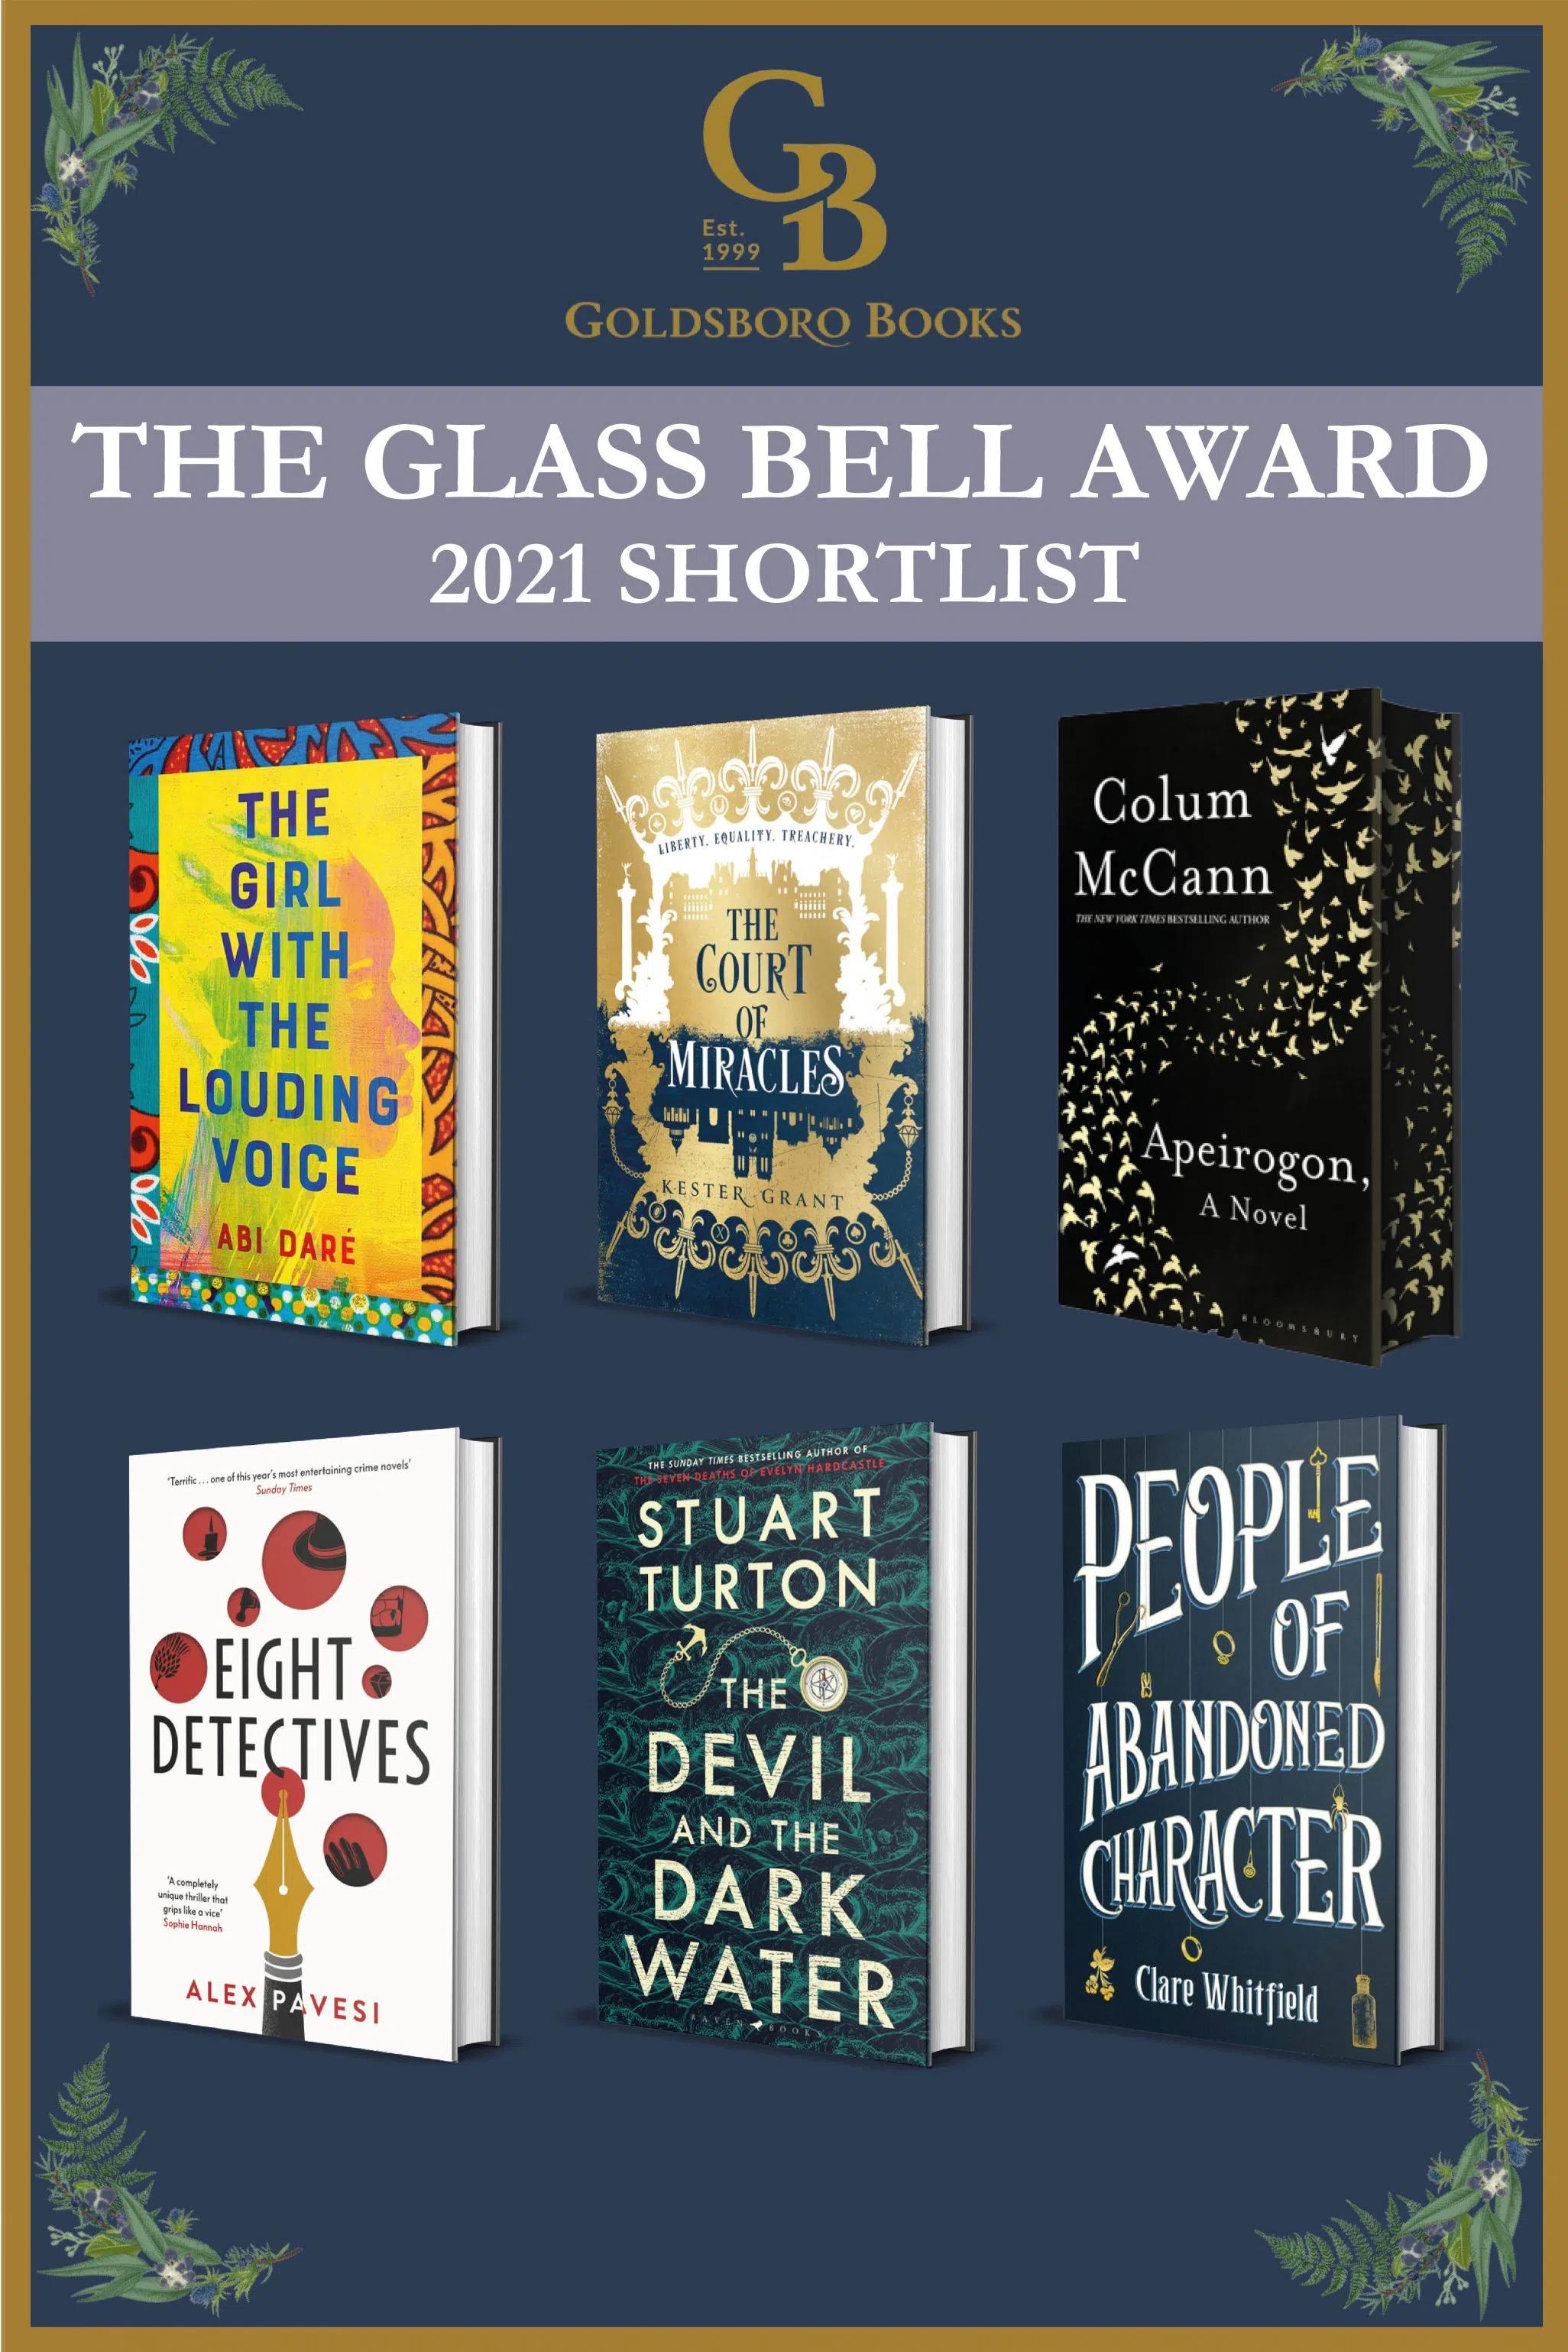 Изображение для Объявлен шорт-лист премии Goldsboro Books Glass Bell Award 2021